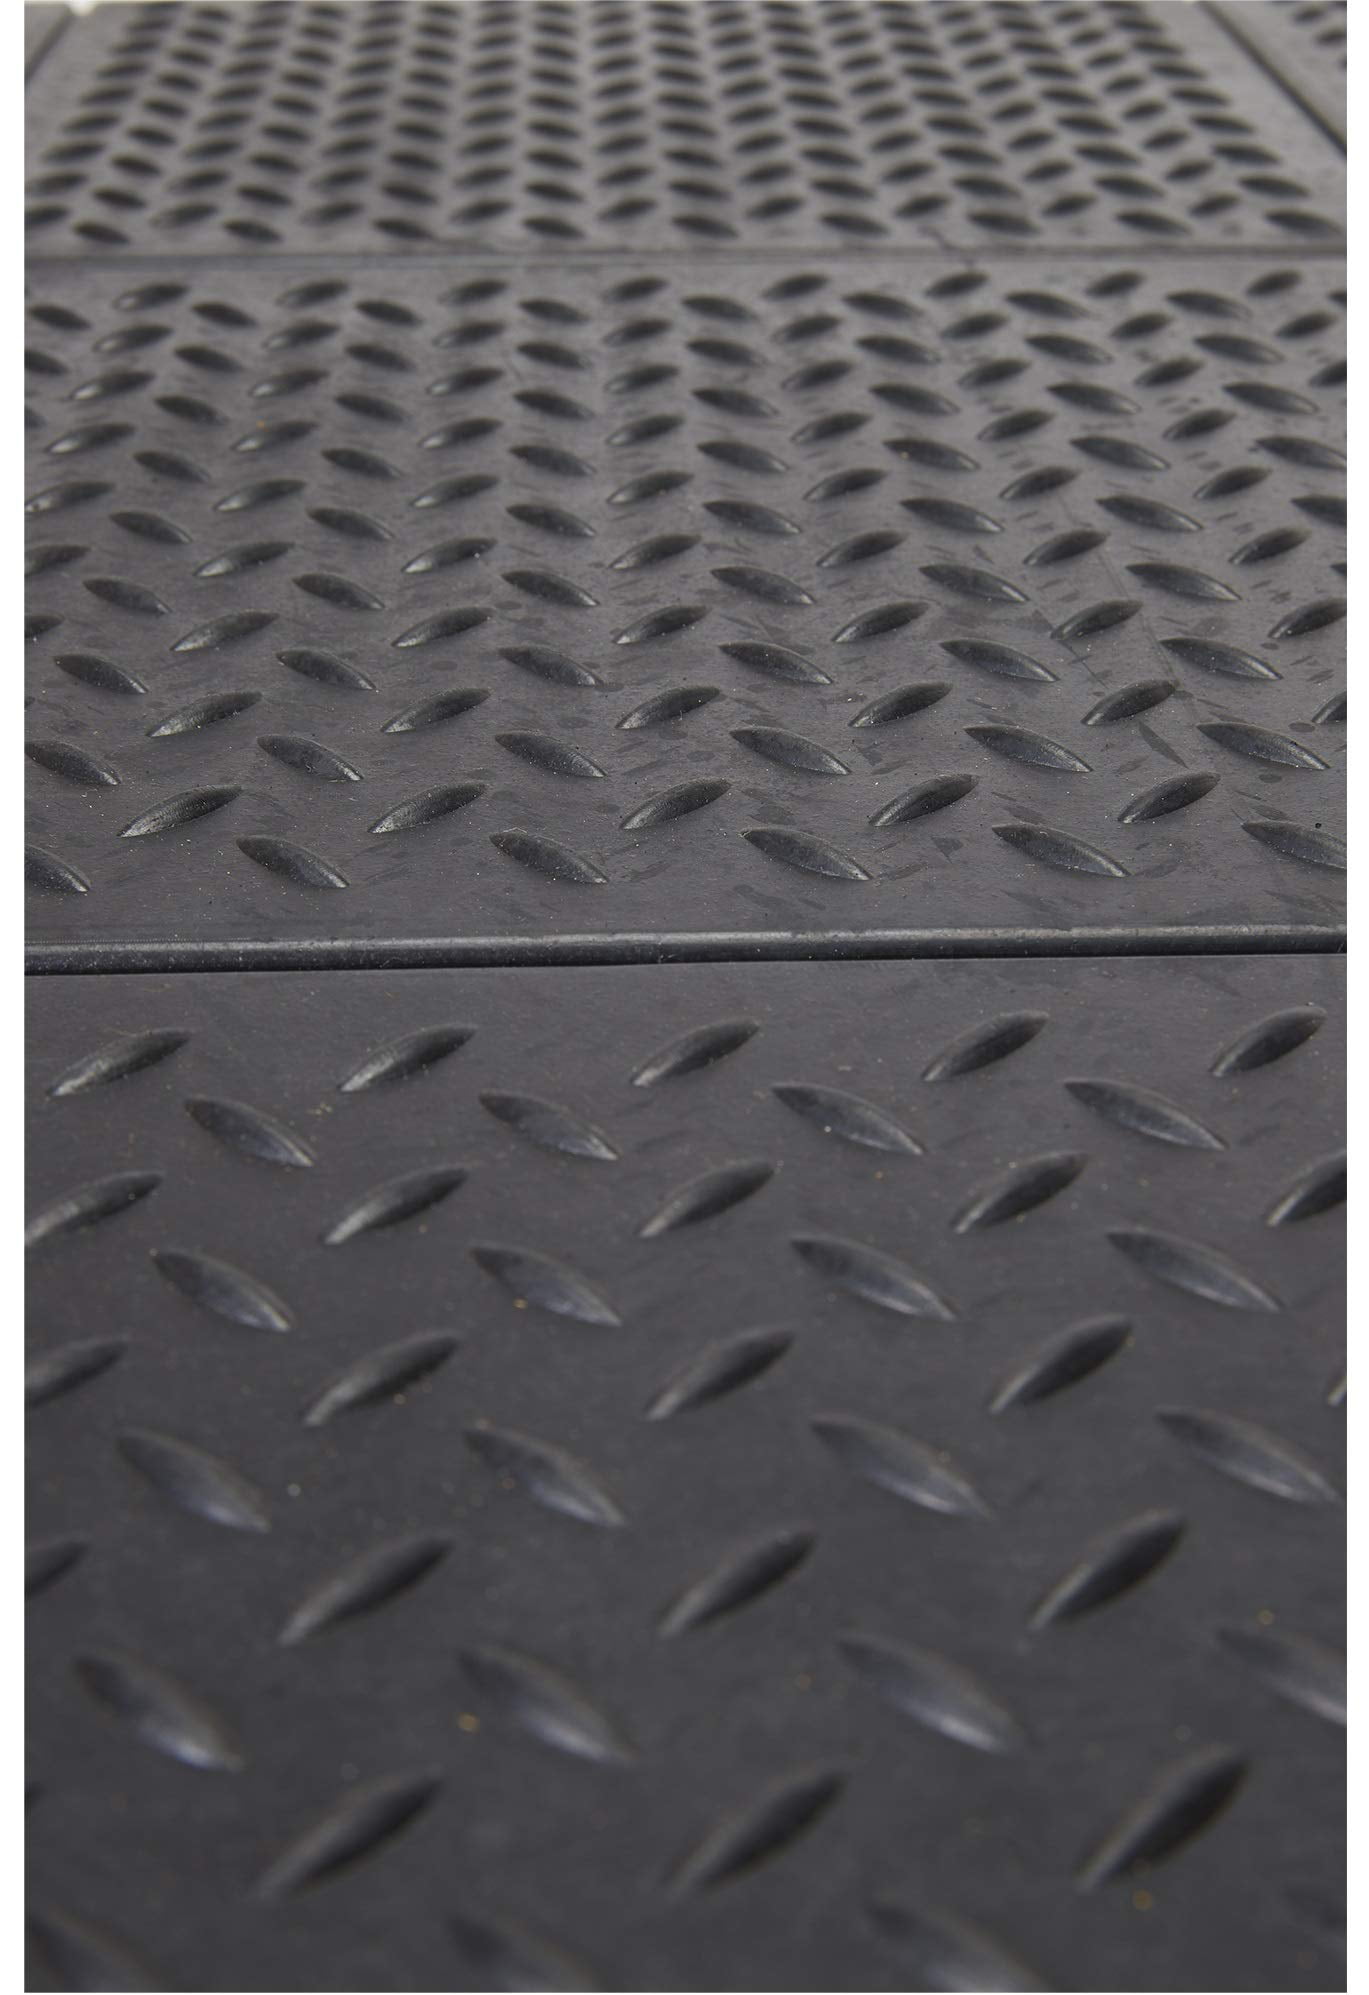 New Envelor Indoor/Outdoor Rubber Anti Fatigue Floor Mat 36 X 60 Inch  Non-Slip Bar Drain - Door Mats - Hudsonville, Michigan, Facebook  Marketplace